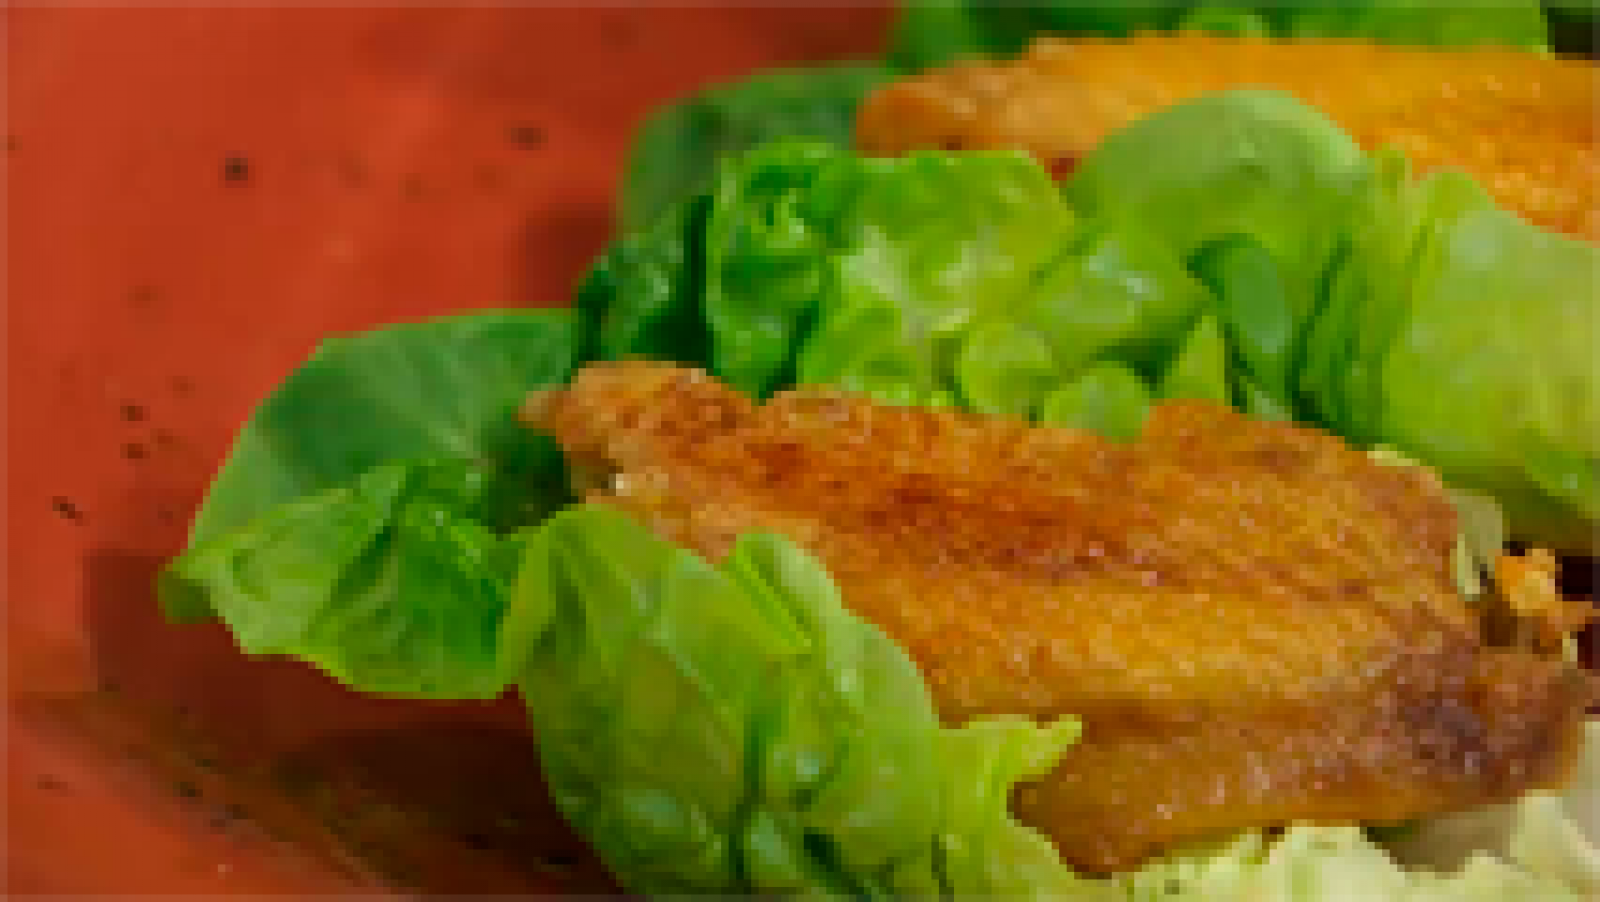 Torres en la cocina - Receta de alitas de pollo crujientes